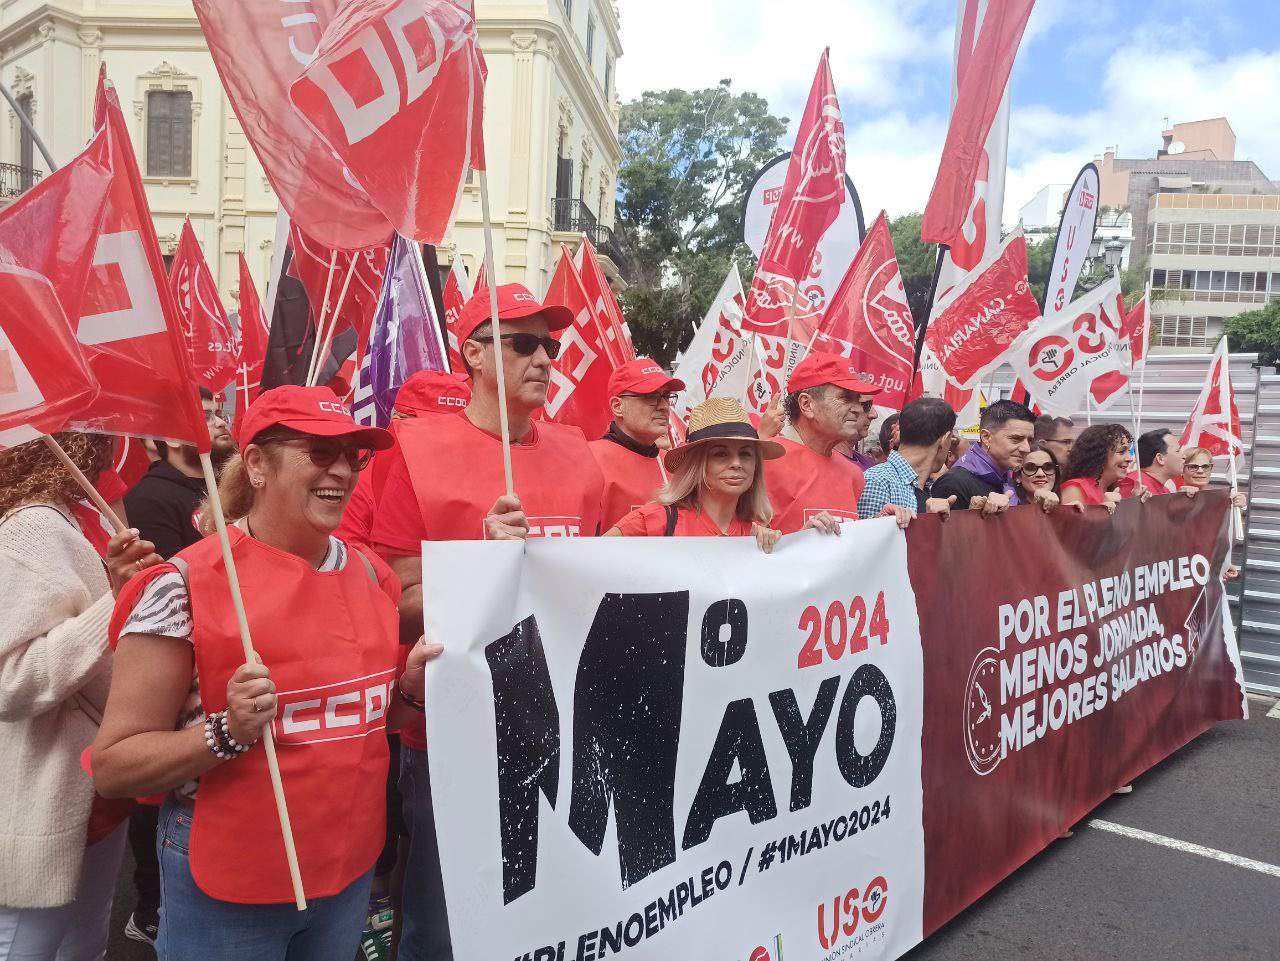 Casi 2.000 personas marchan en Canarias por el pleno empleo, más salario y reducción de jornada